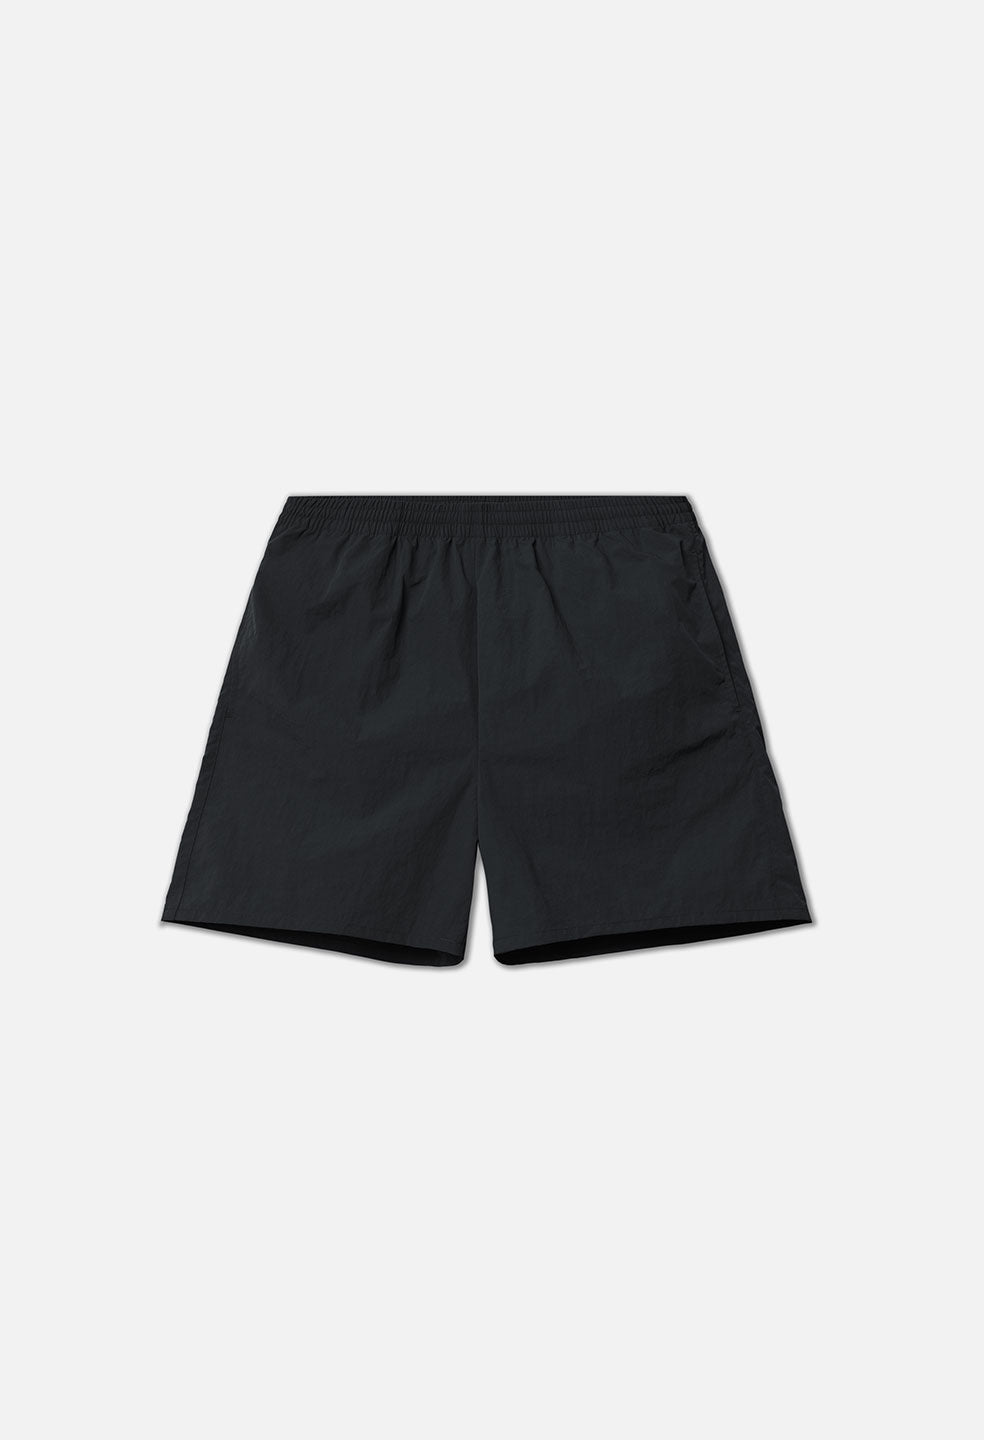 Himalayan Shorts / Black - JOHN ELLIOTT